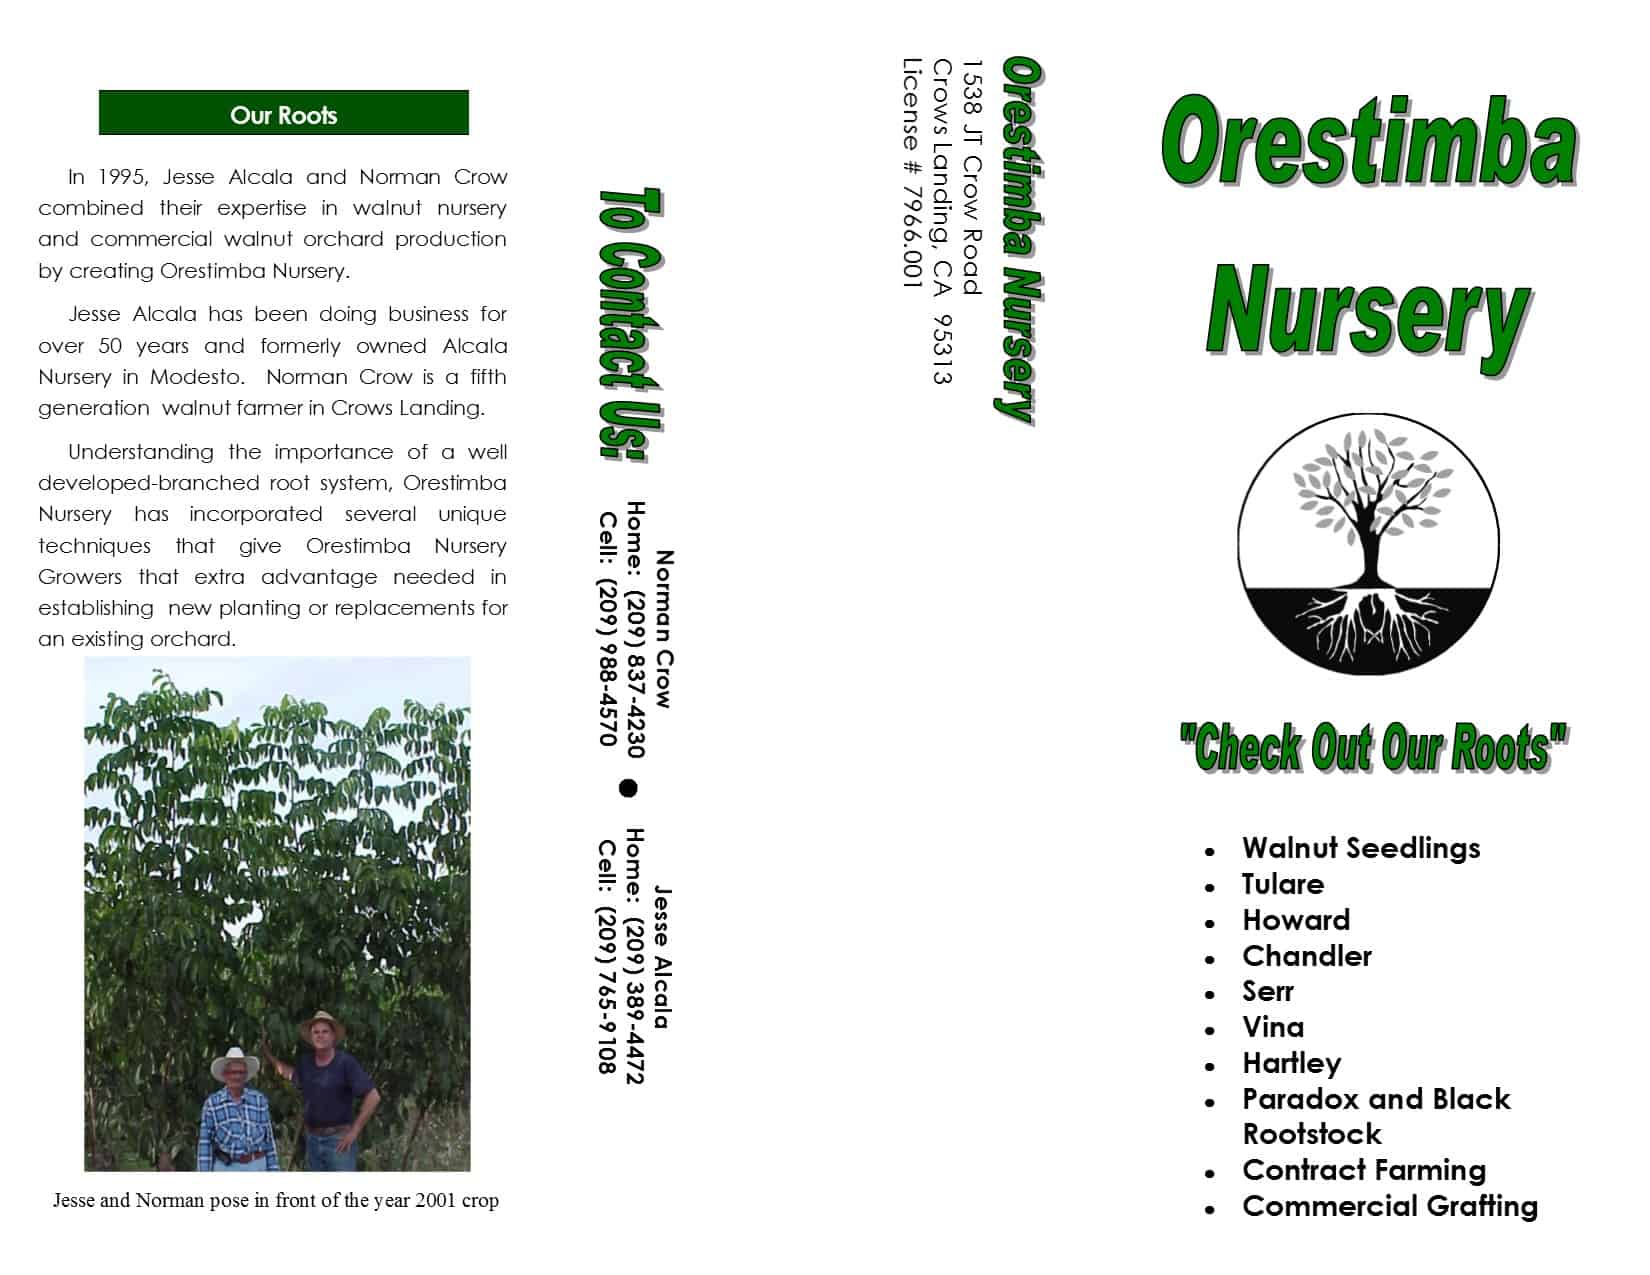 Orestimba Nursery